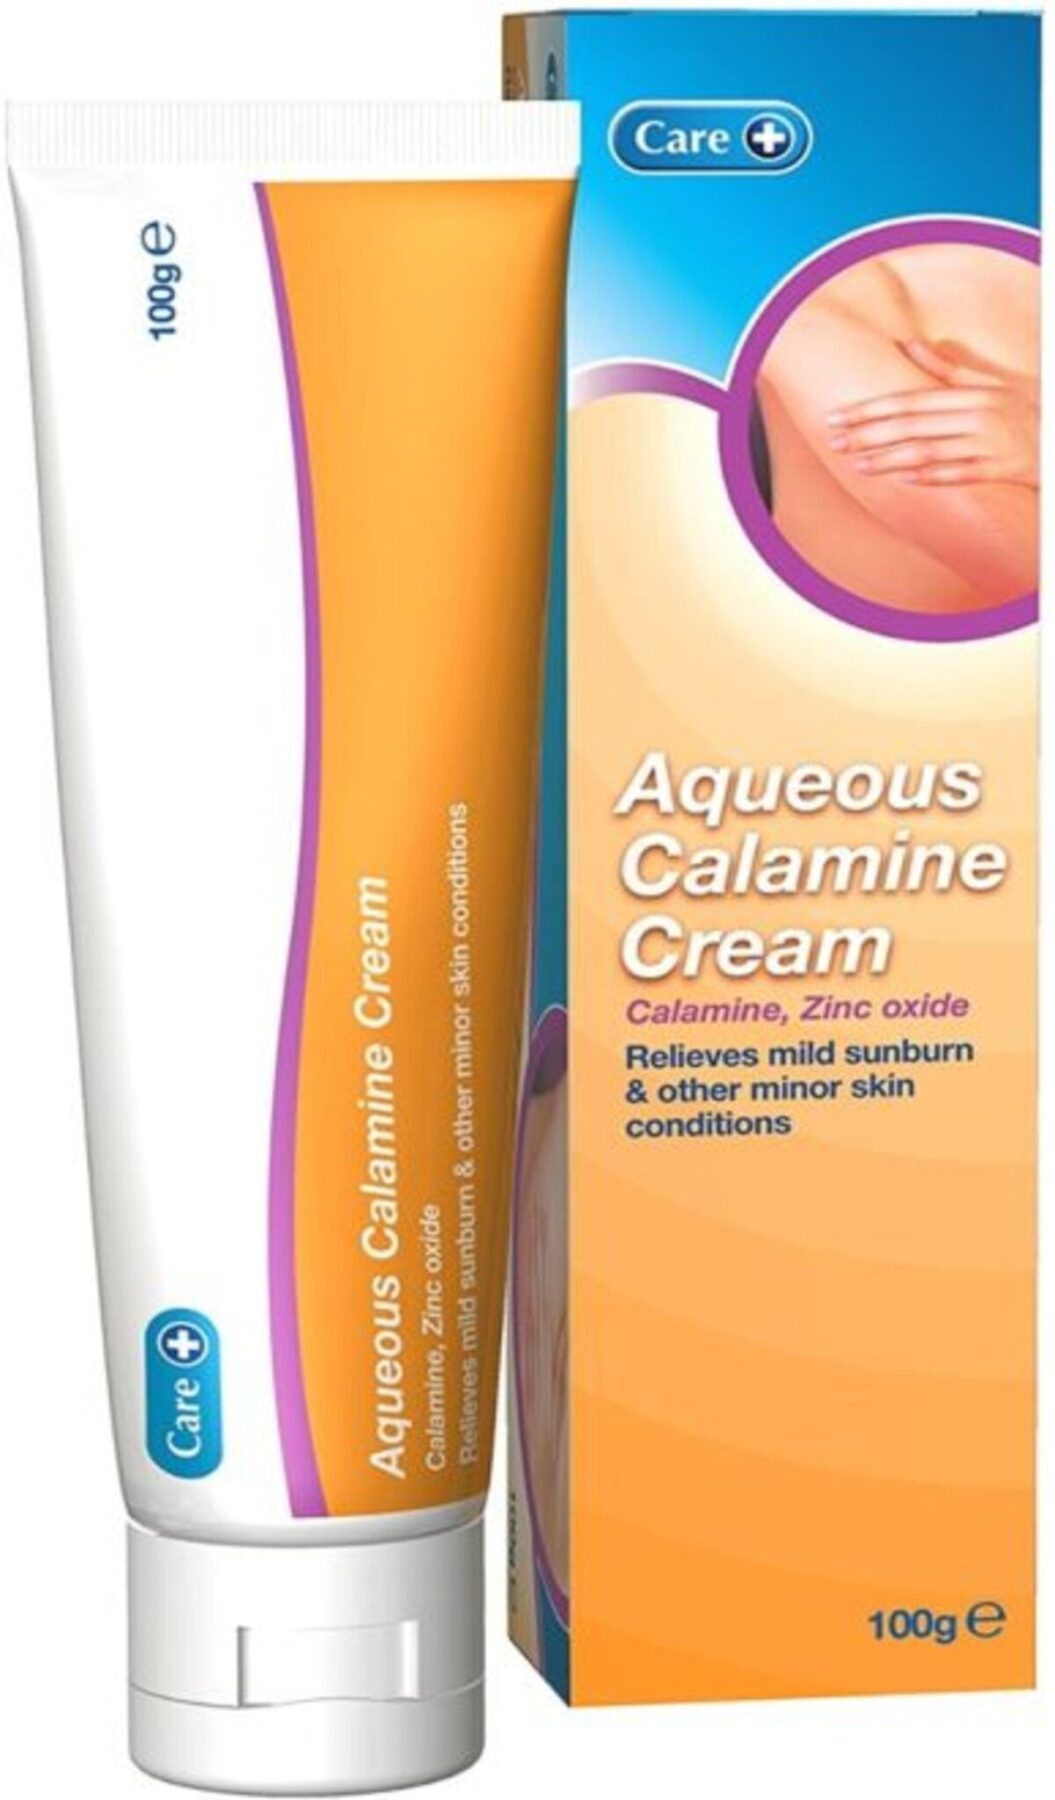 Calamine Cream - Homecare24